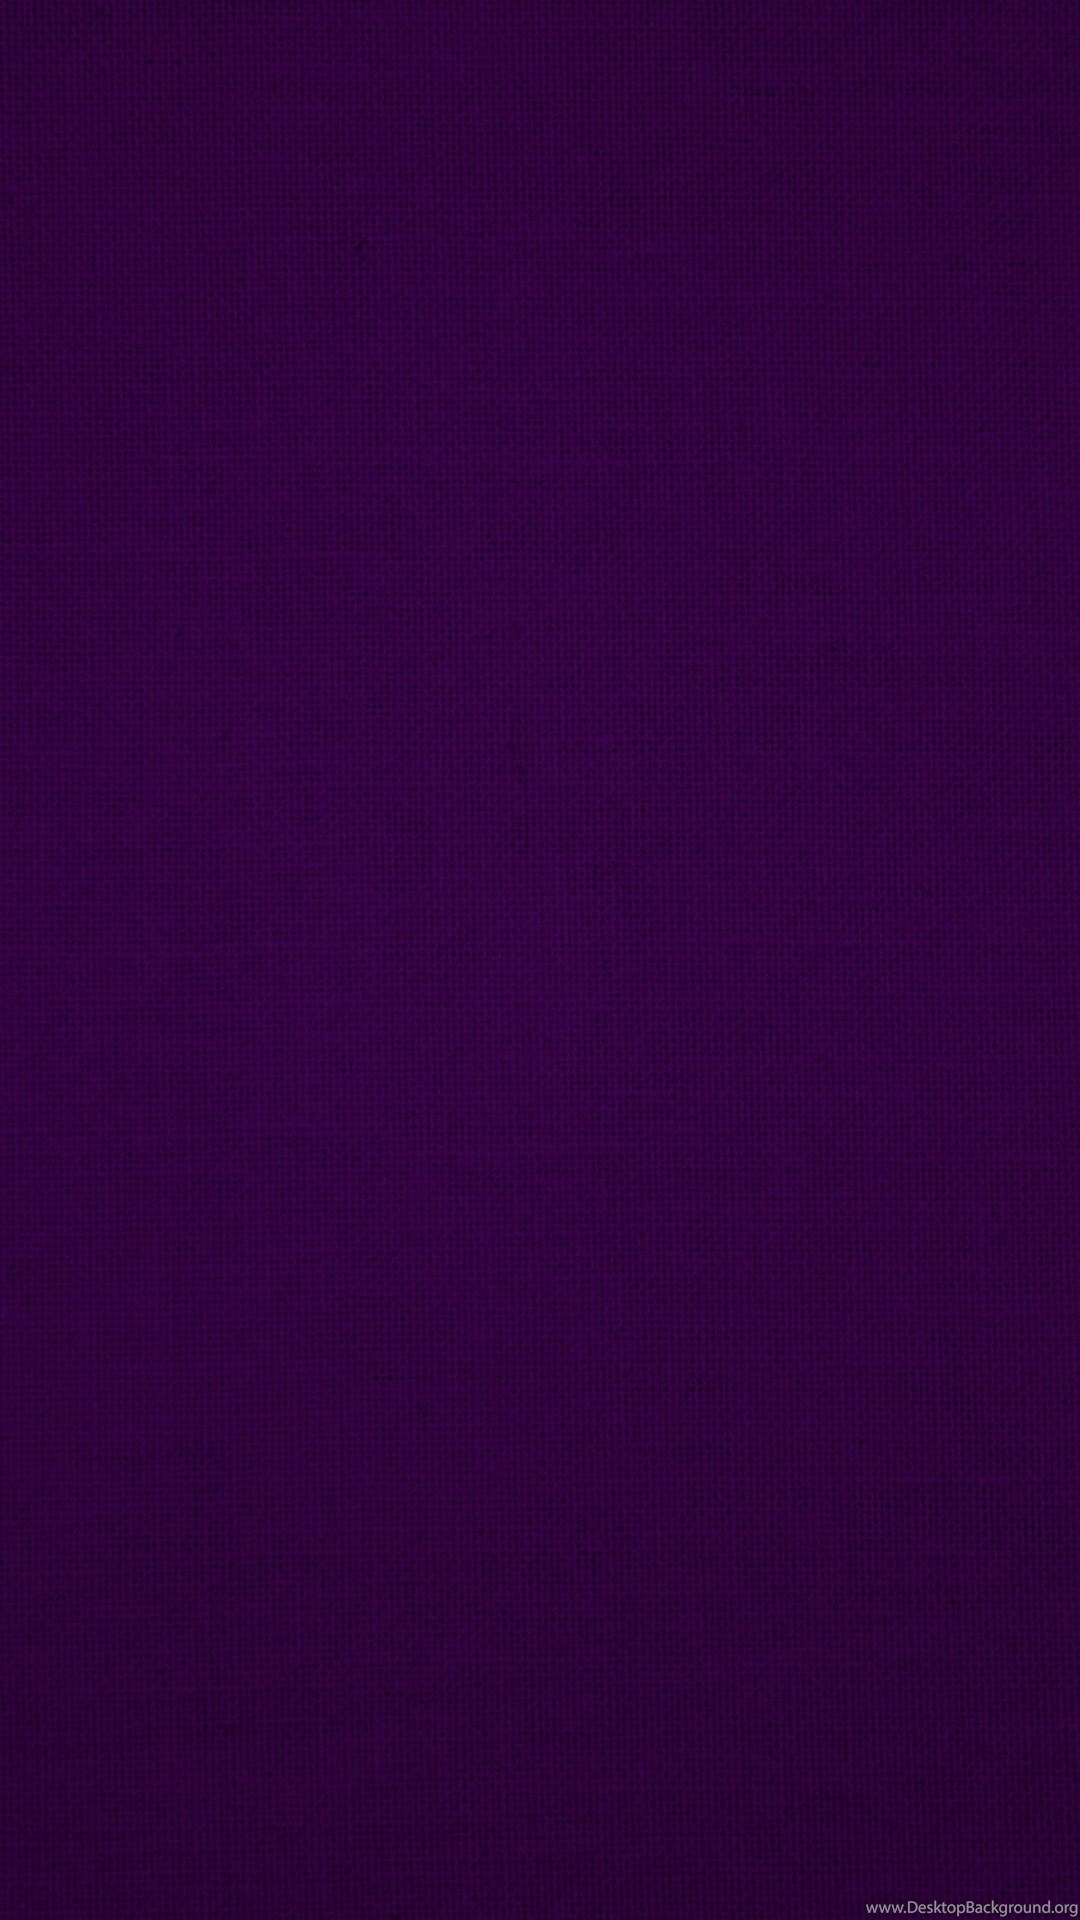 Dark Purple Backgrounds Wallpapers Cave Desktop Background